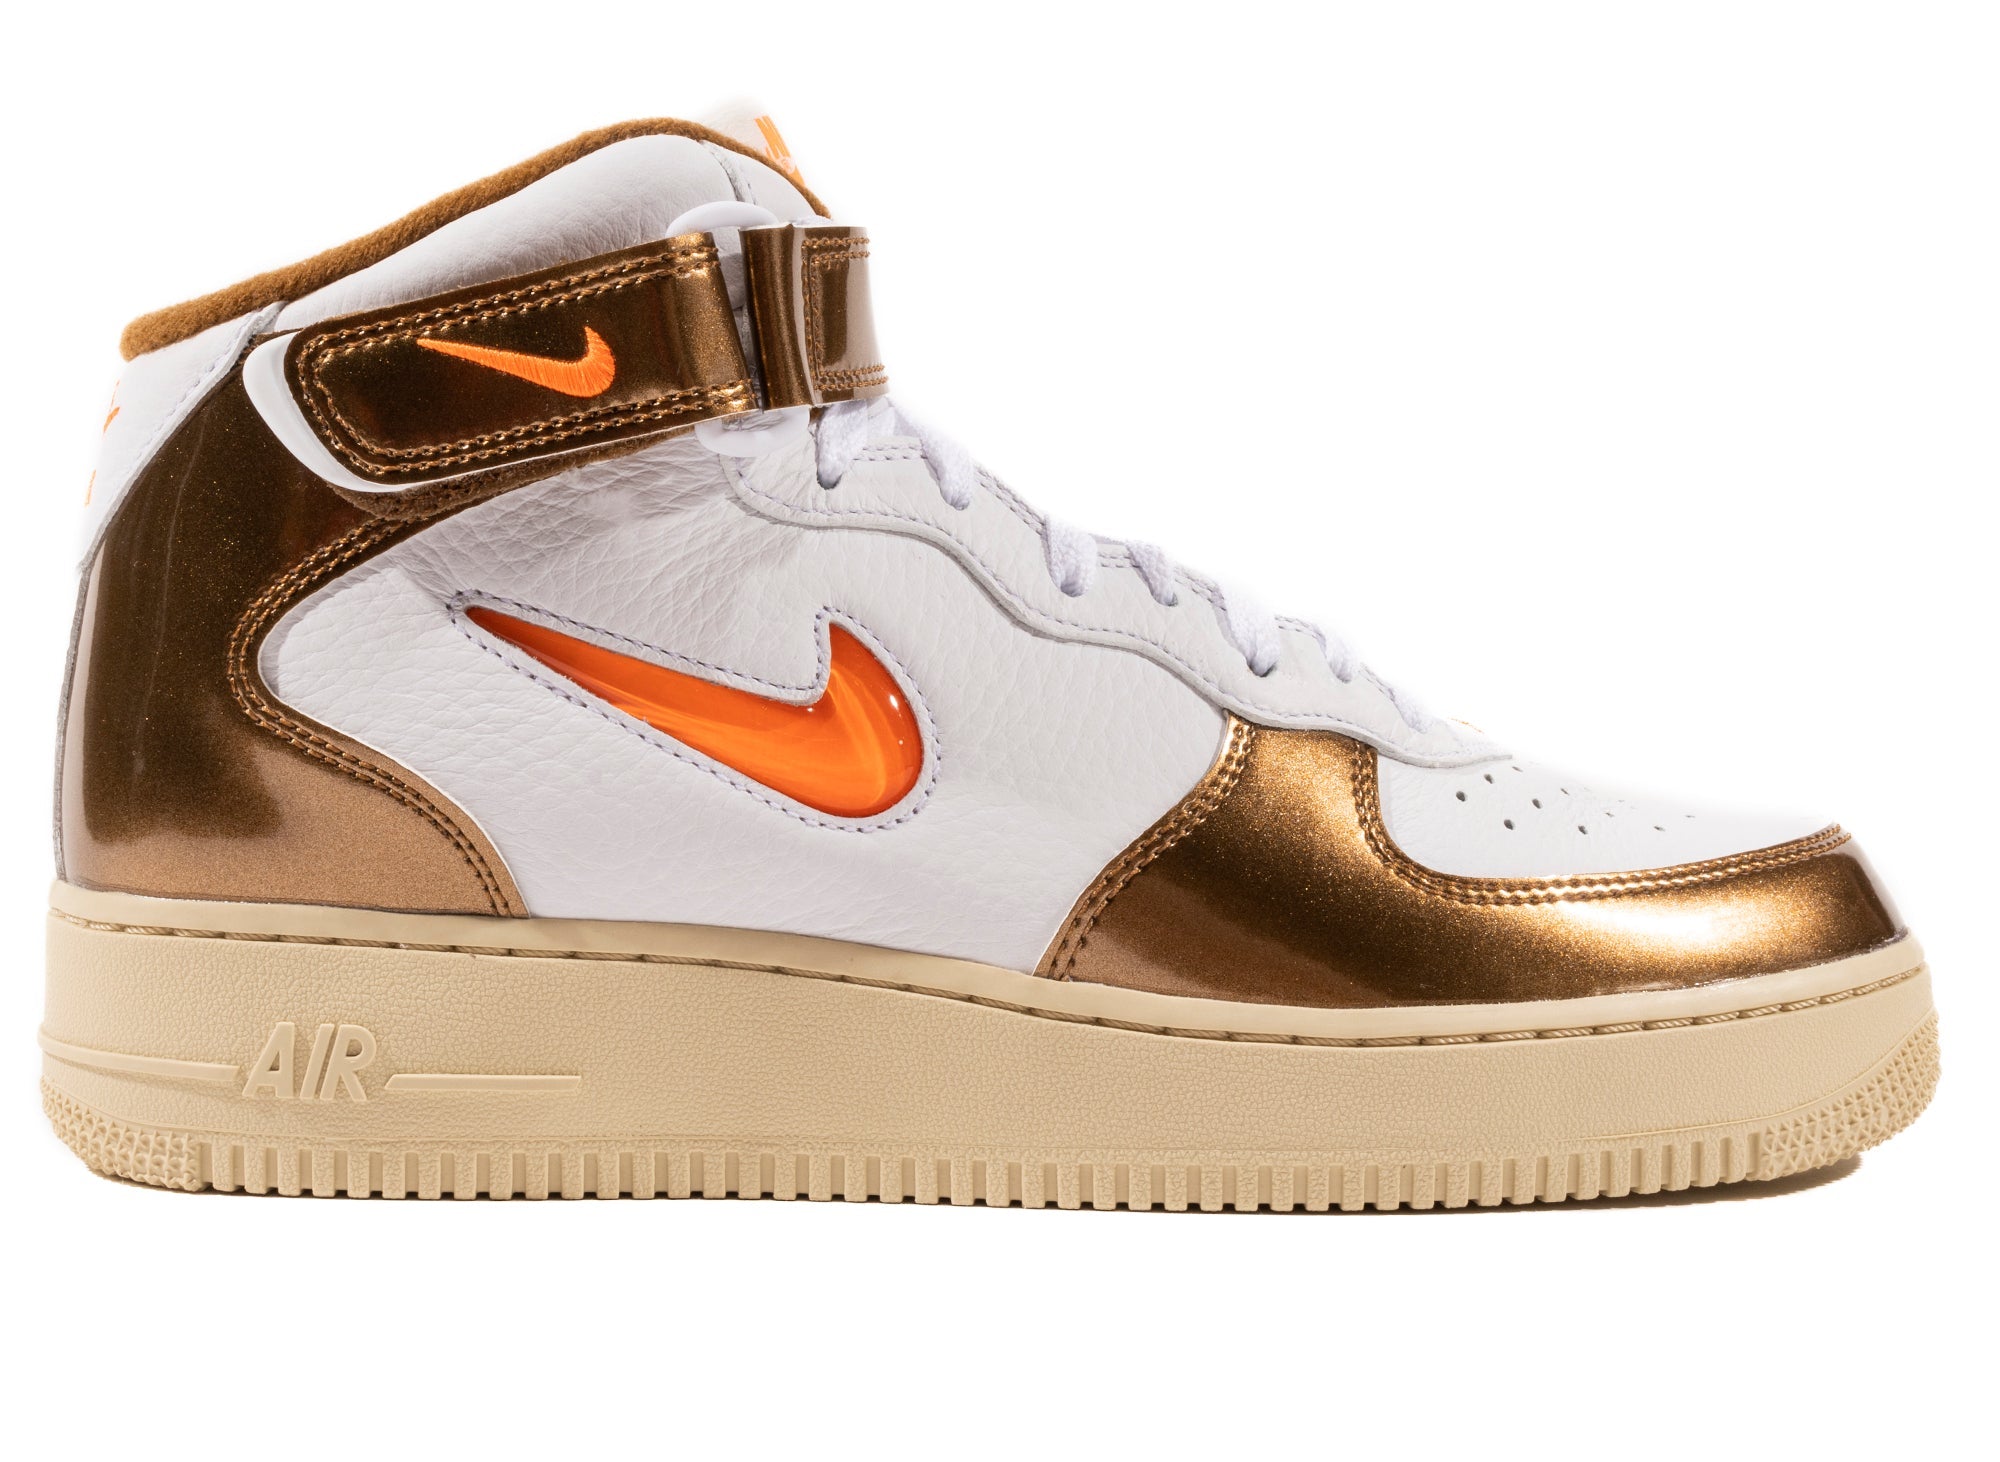 Nike Air Force 1 Mid QS (White/Total Orange/Ale Brown/Beach) – Concepts